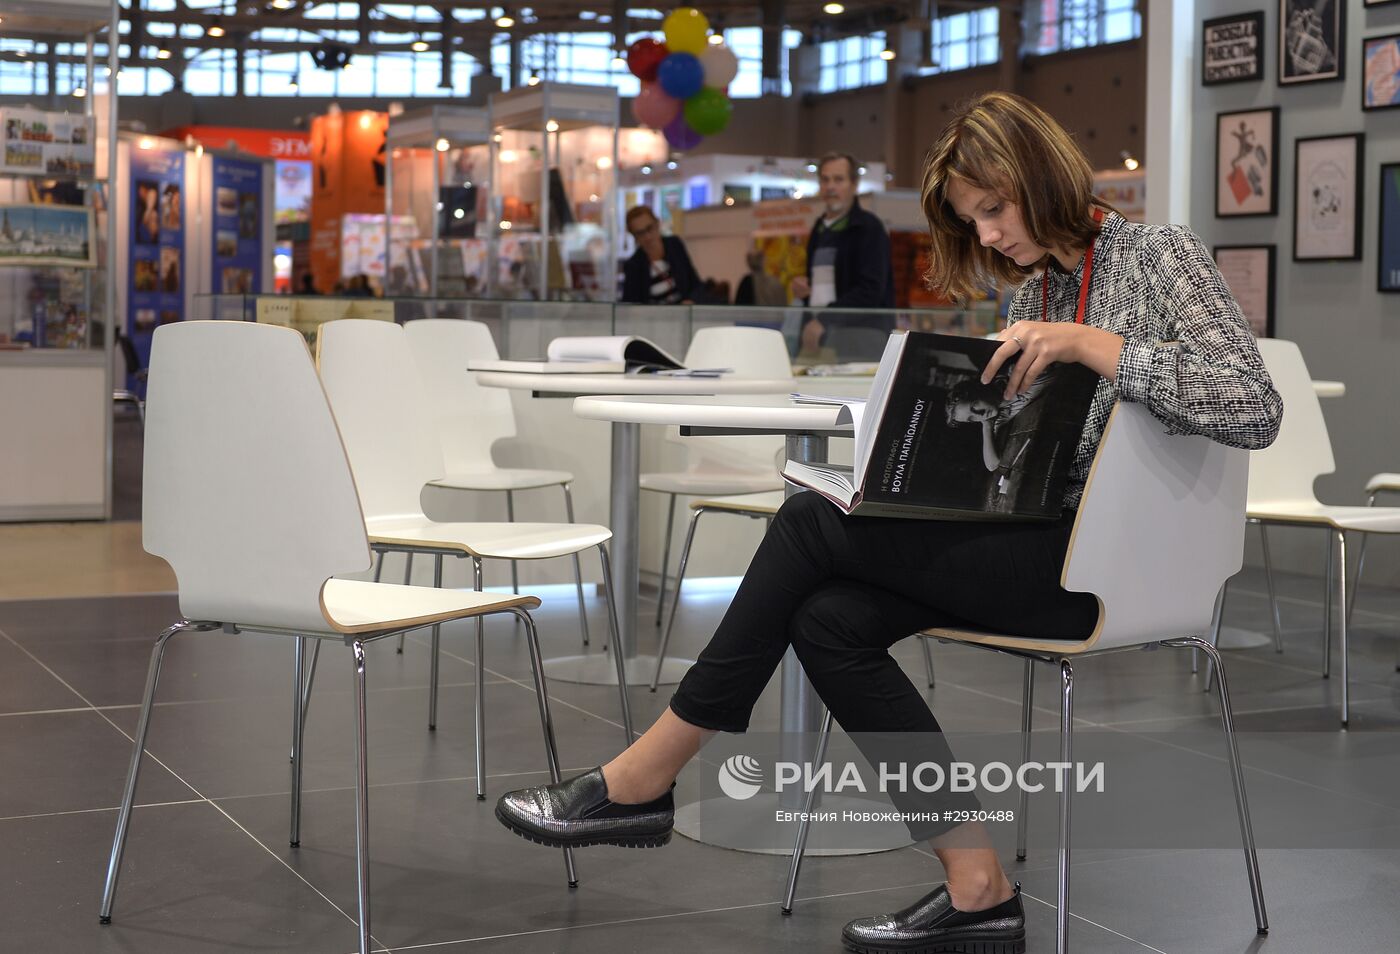 Открытие 29-й Московской международной книжной выставки-ярмарки